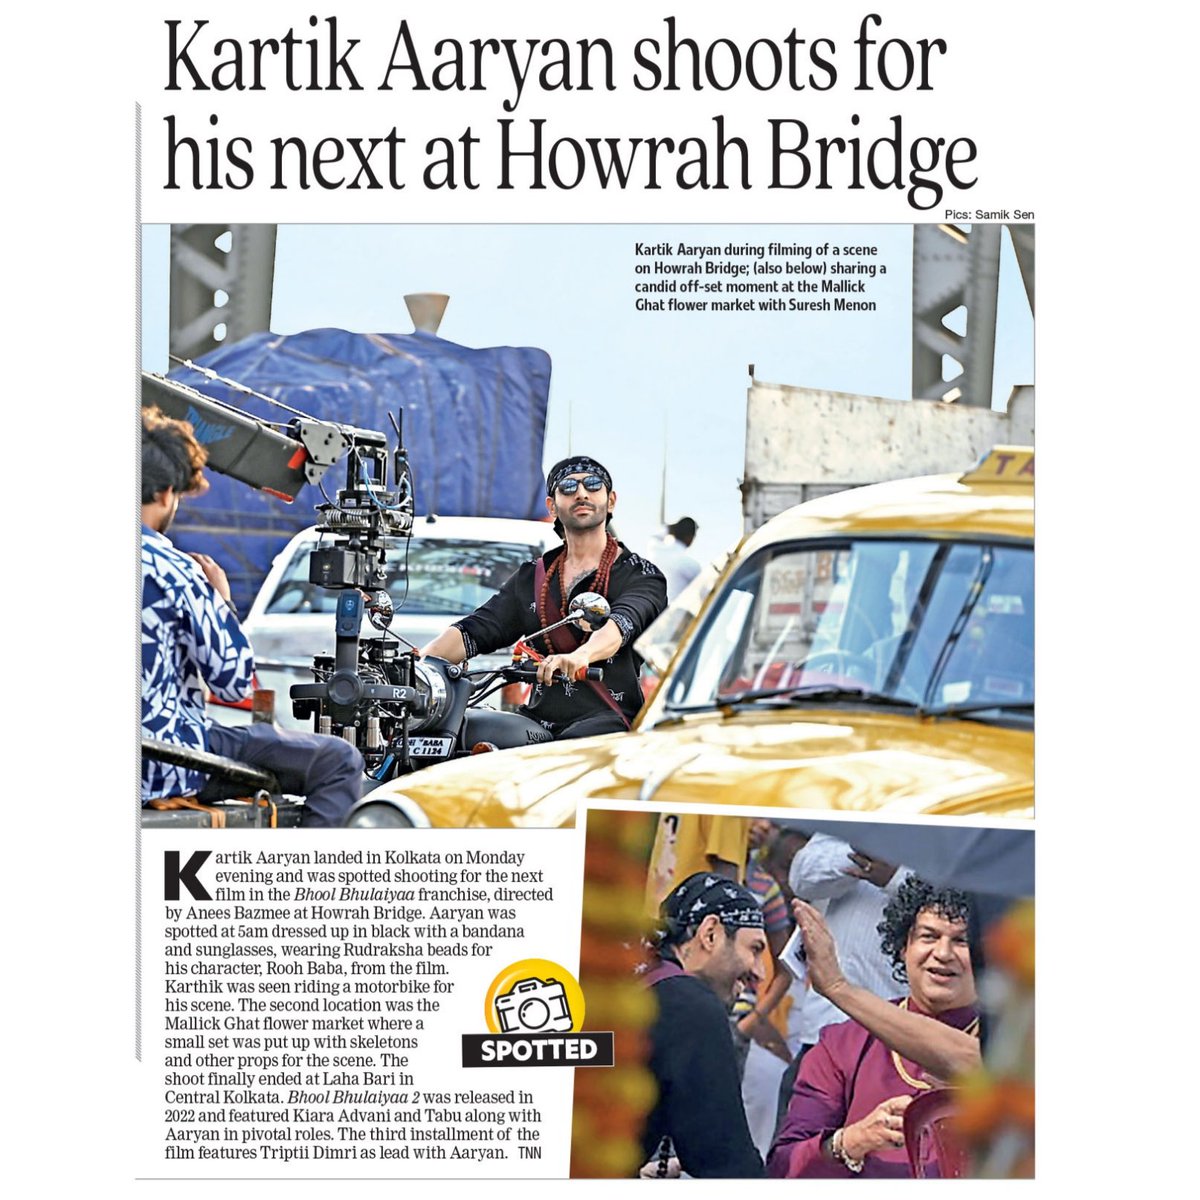 Kartik Aaryan shoots for his upcoming film Bhool Bhulaiyaa 3 at Howrah Bridge.

#kartikaaryan #bhoolbhulaiya3 #shooting #howrahbridge #calcuttatimes #spotted